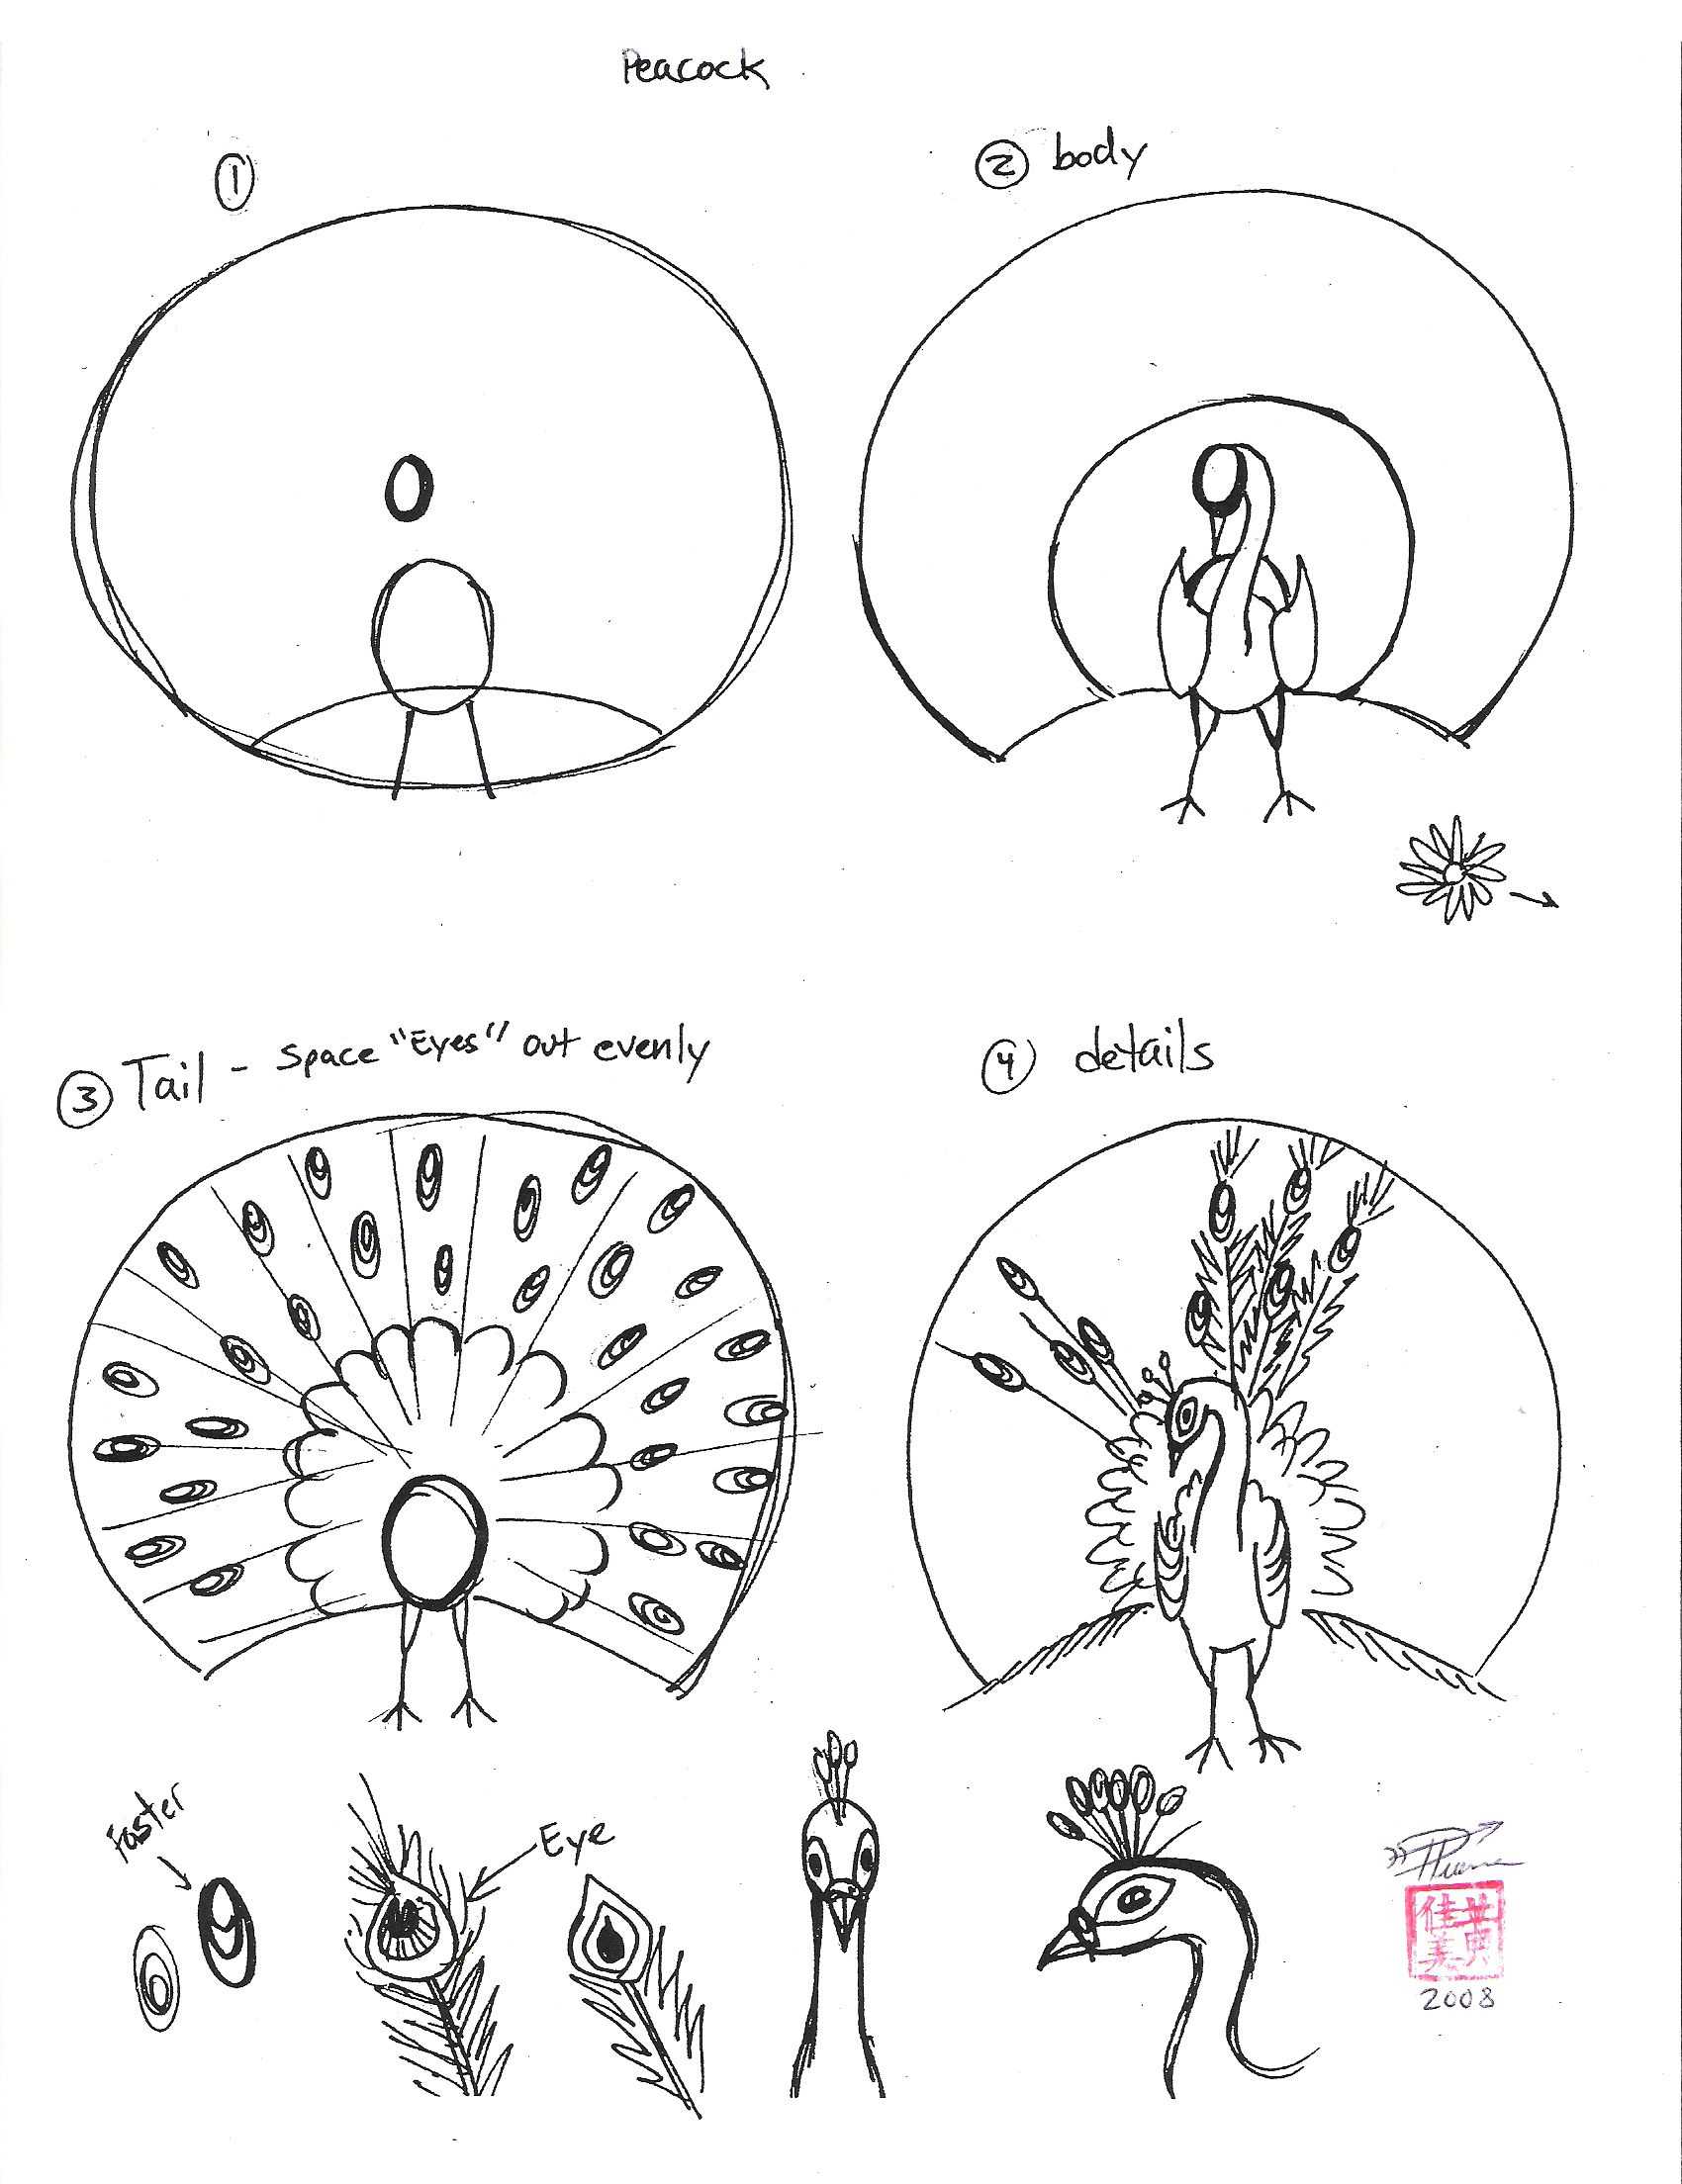 Как нарисовать человека паука: пошаговый урок создания рисунка по клеточкам. обзор идей, схем, картинок для детей